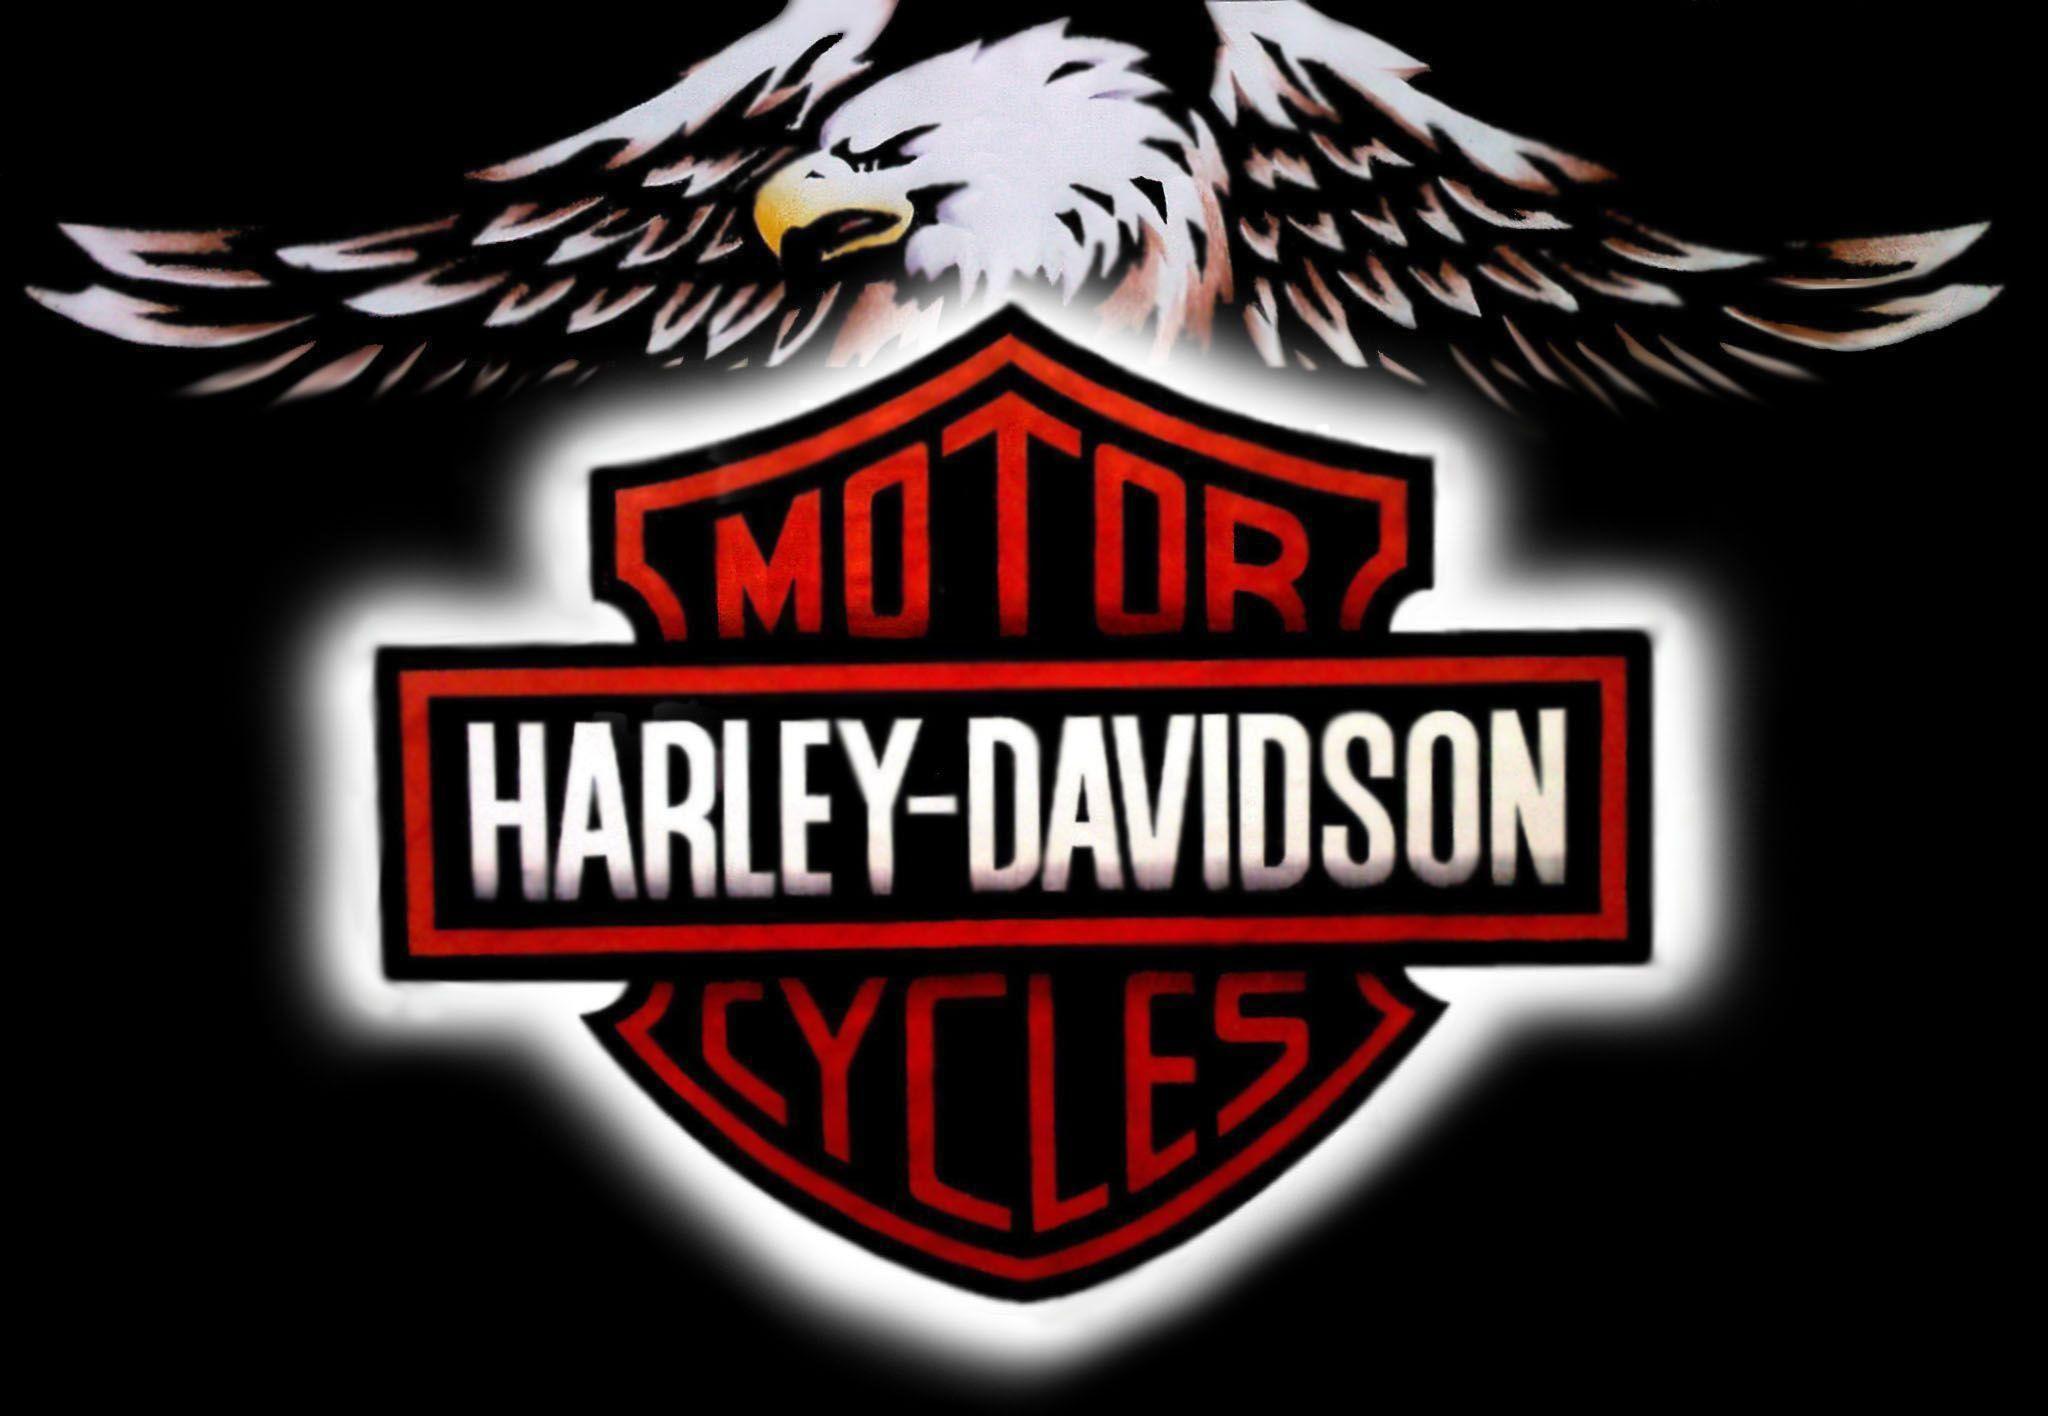 Harley Davidson Background For Desktop